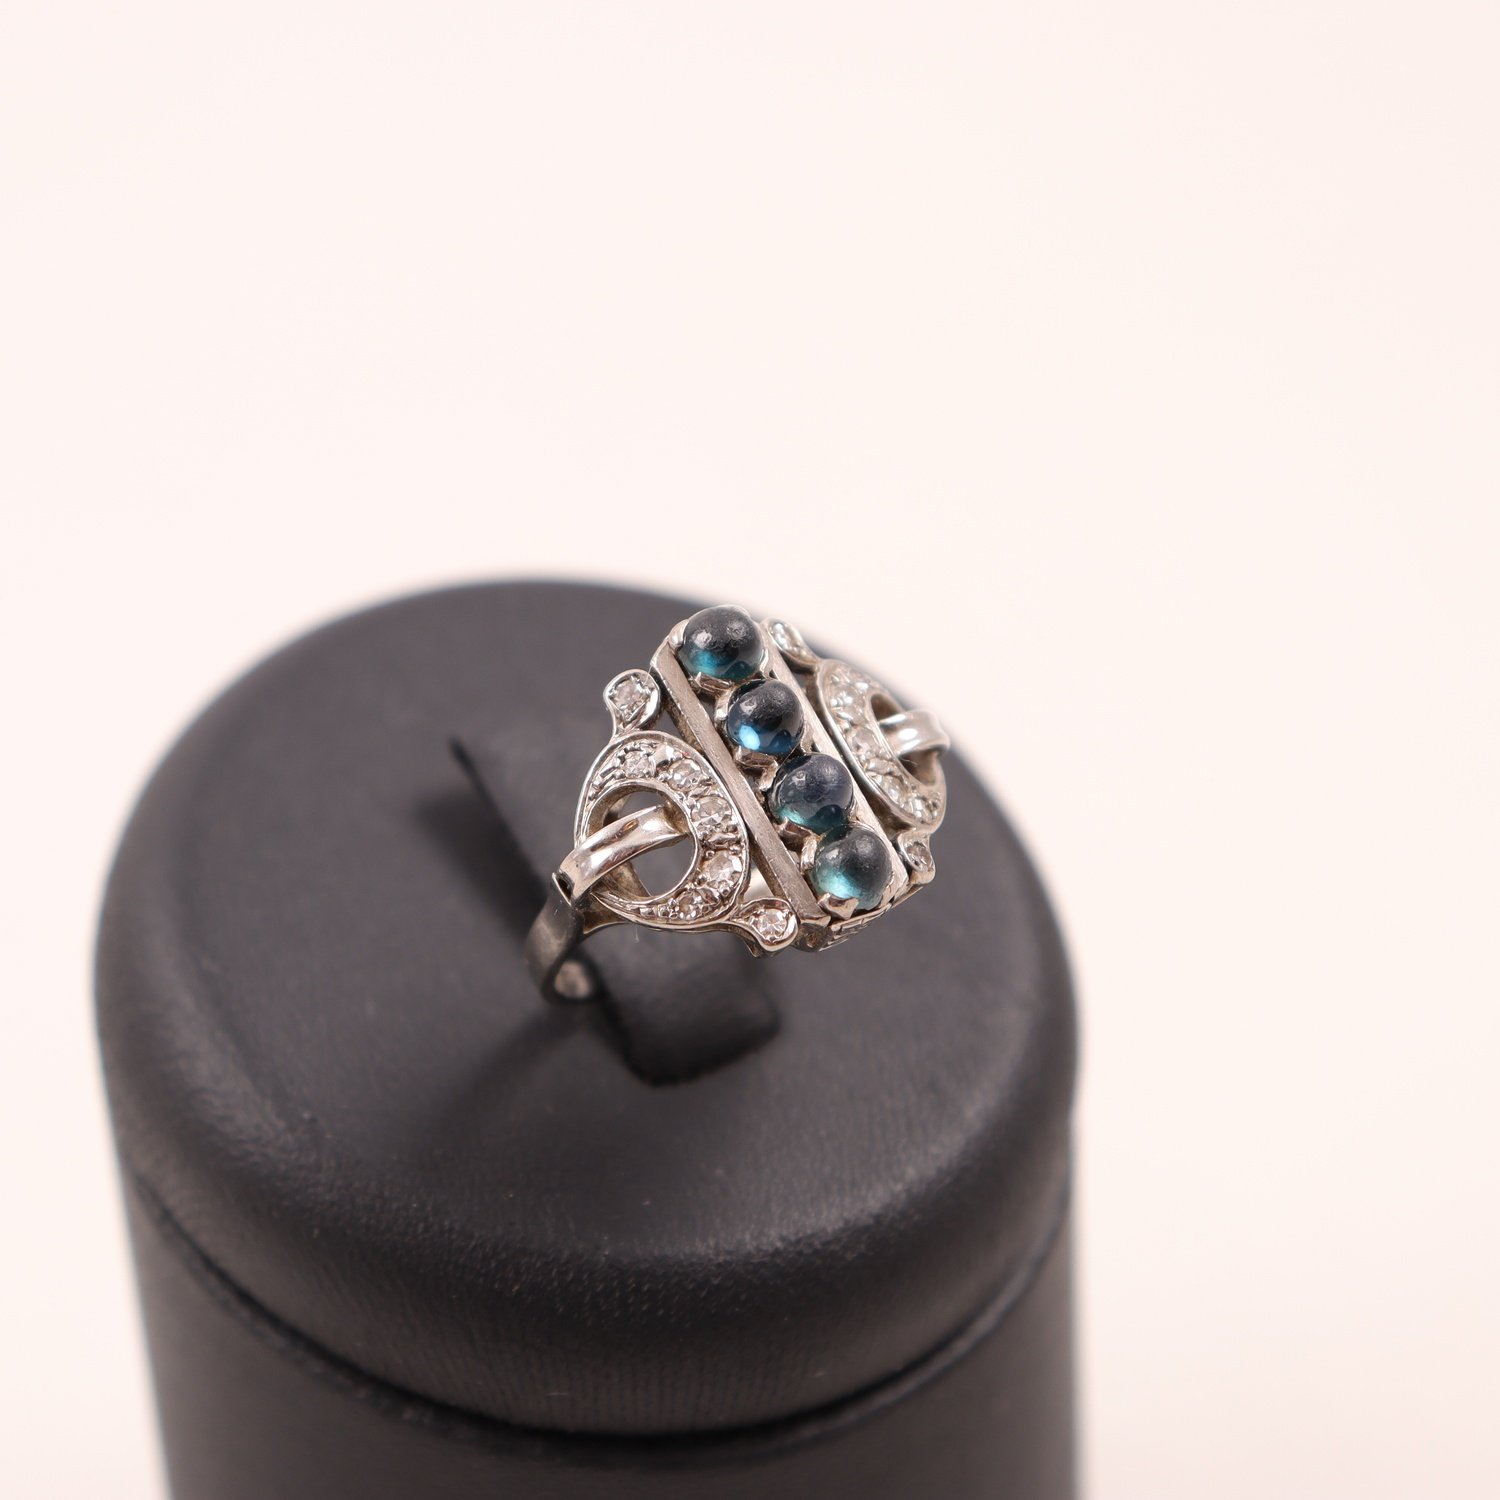 Ring, vitguld 18K, blå stenar, diamanter, brv: 5,8g